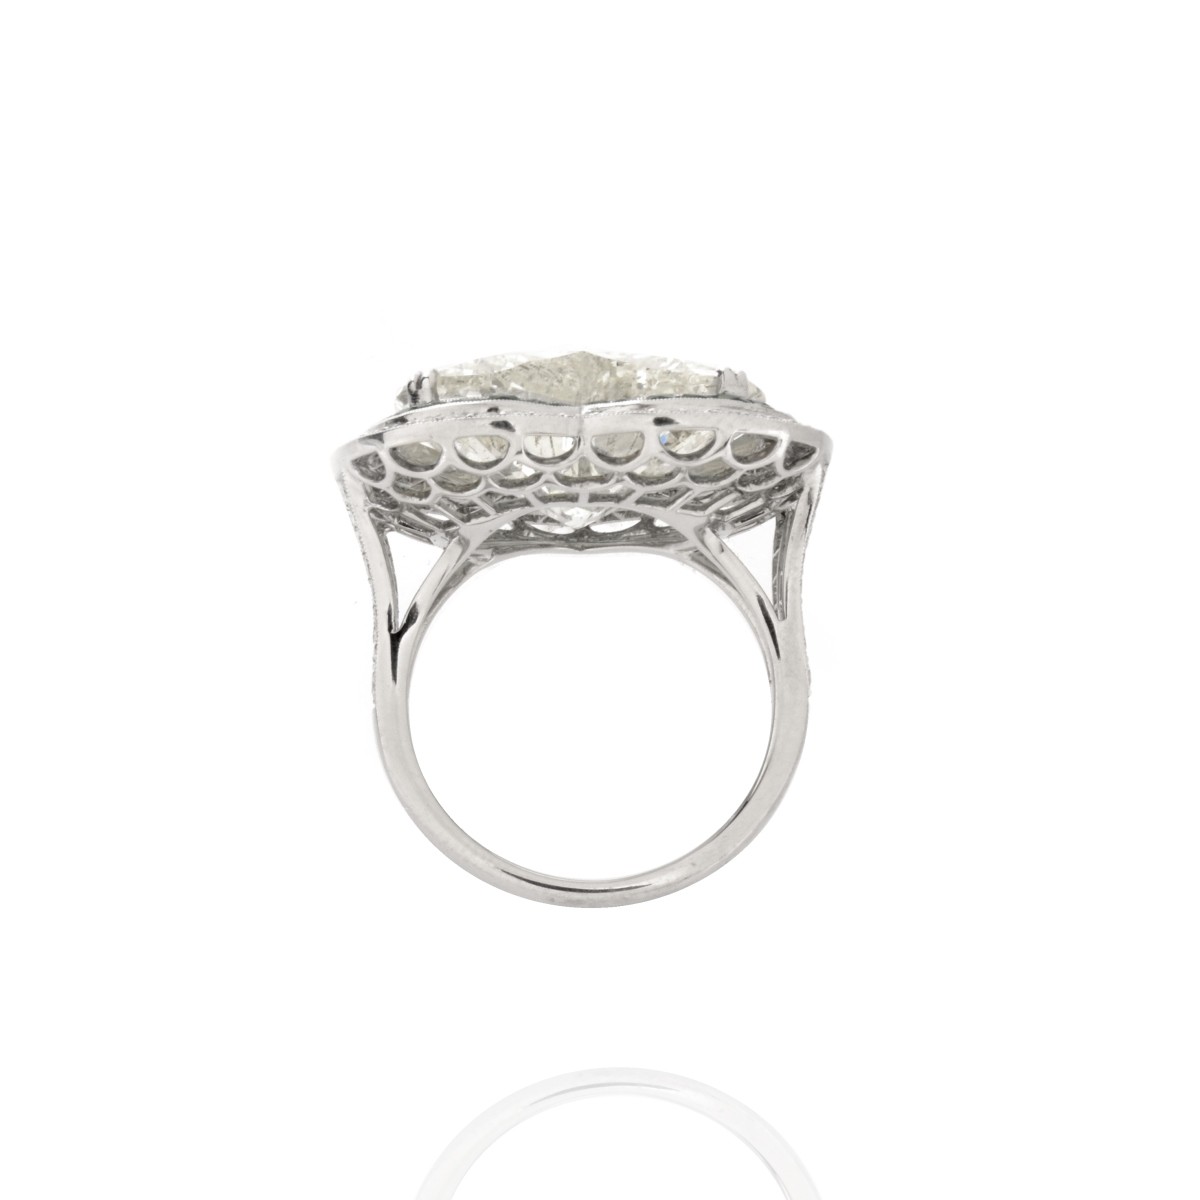 EGL 15.01 Carat Diamond and Platinum Ring